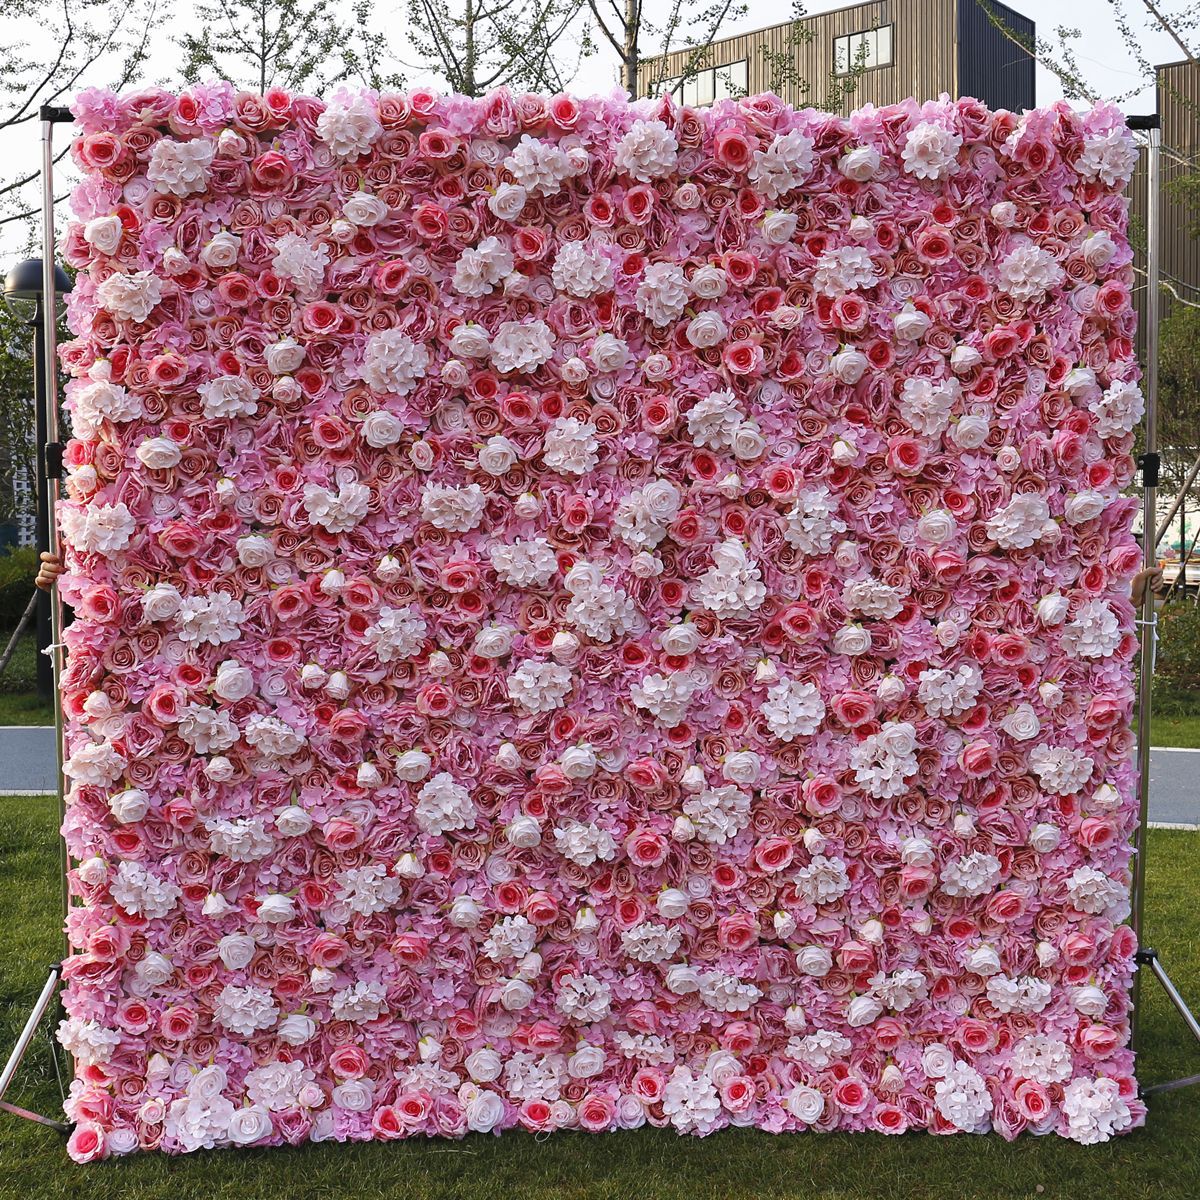 Wedding Fabric Bottom Simulasi Flower Wall Background Wall Film Studio Background Silk Flower Row Plant Wall Flower Wall